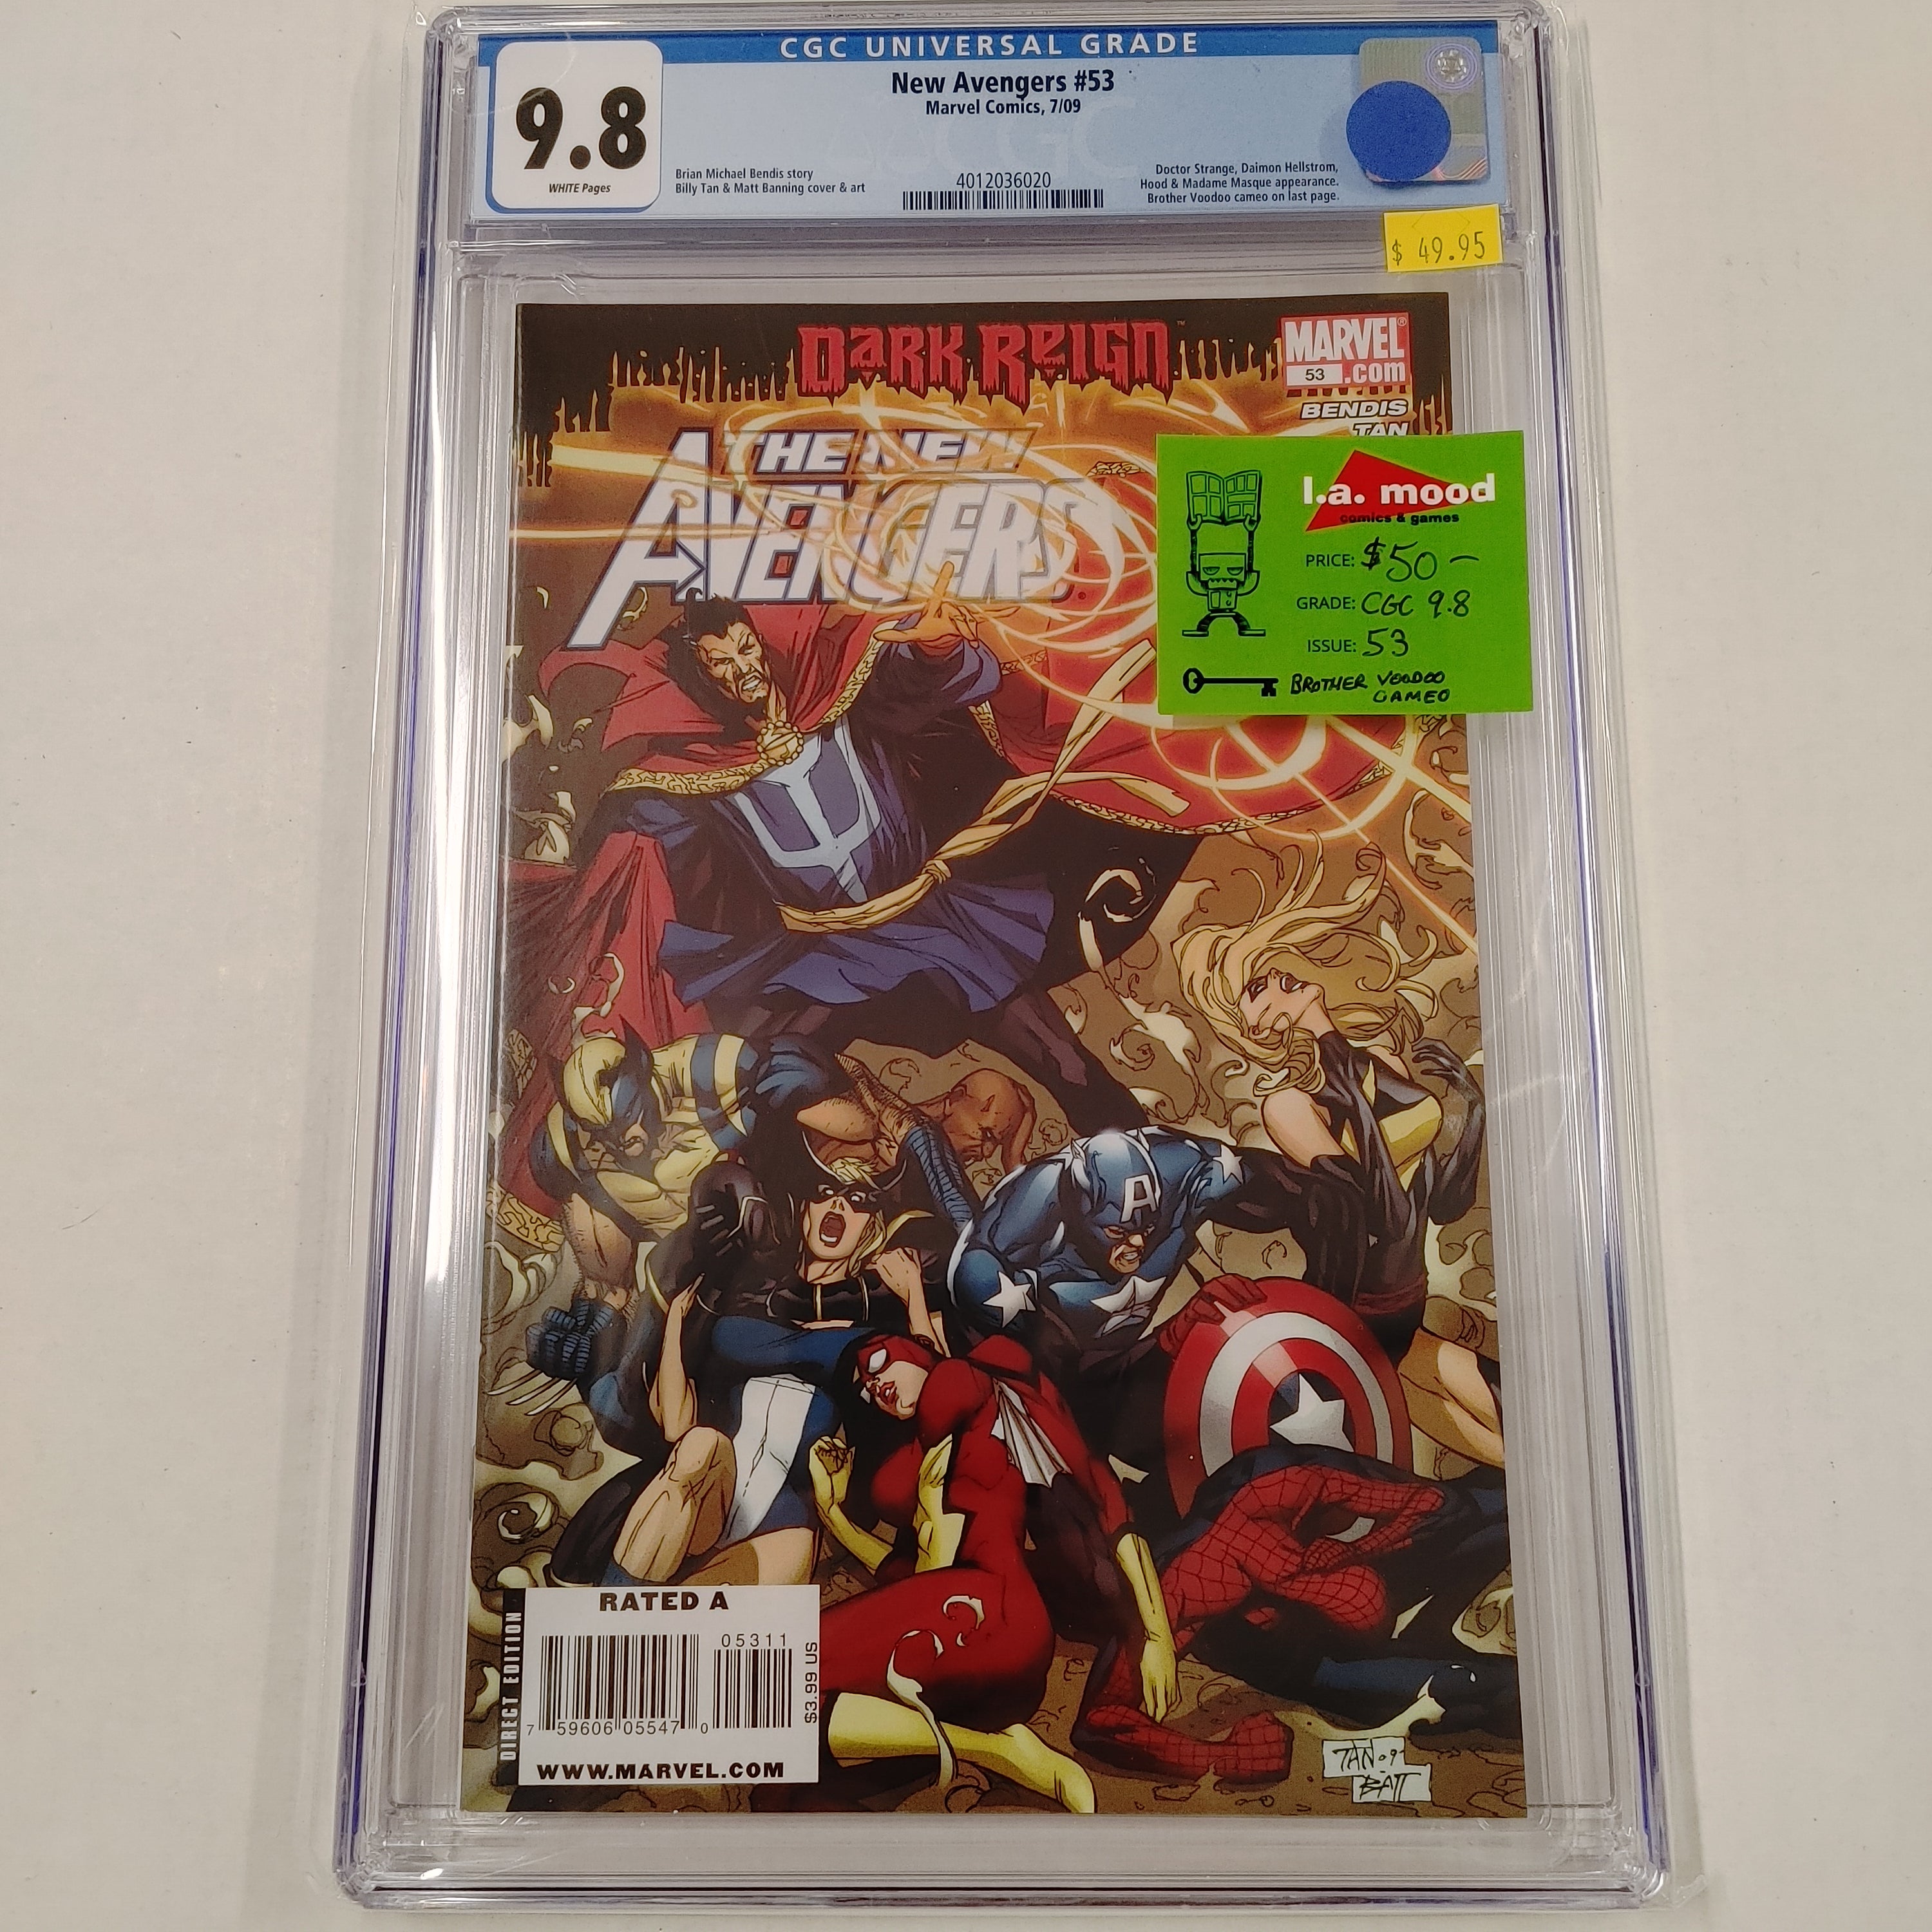 New Avengers #53 CGC 9.8 | L.A. Mood Comics and Games